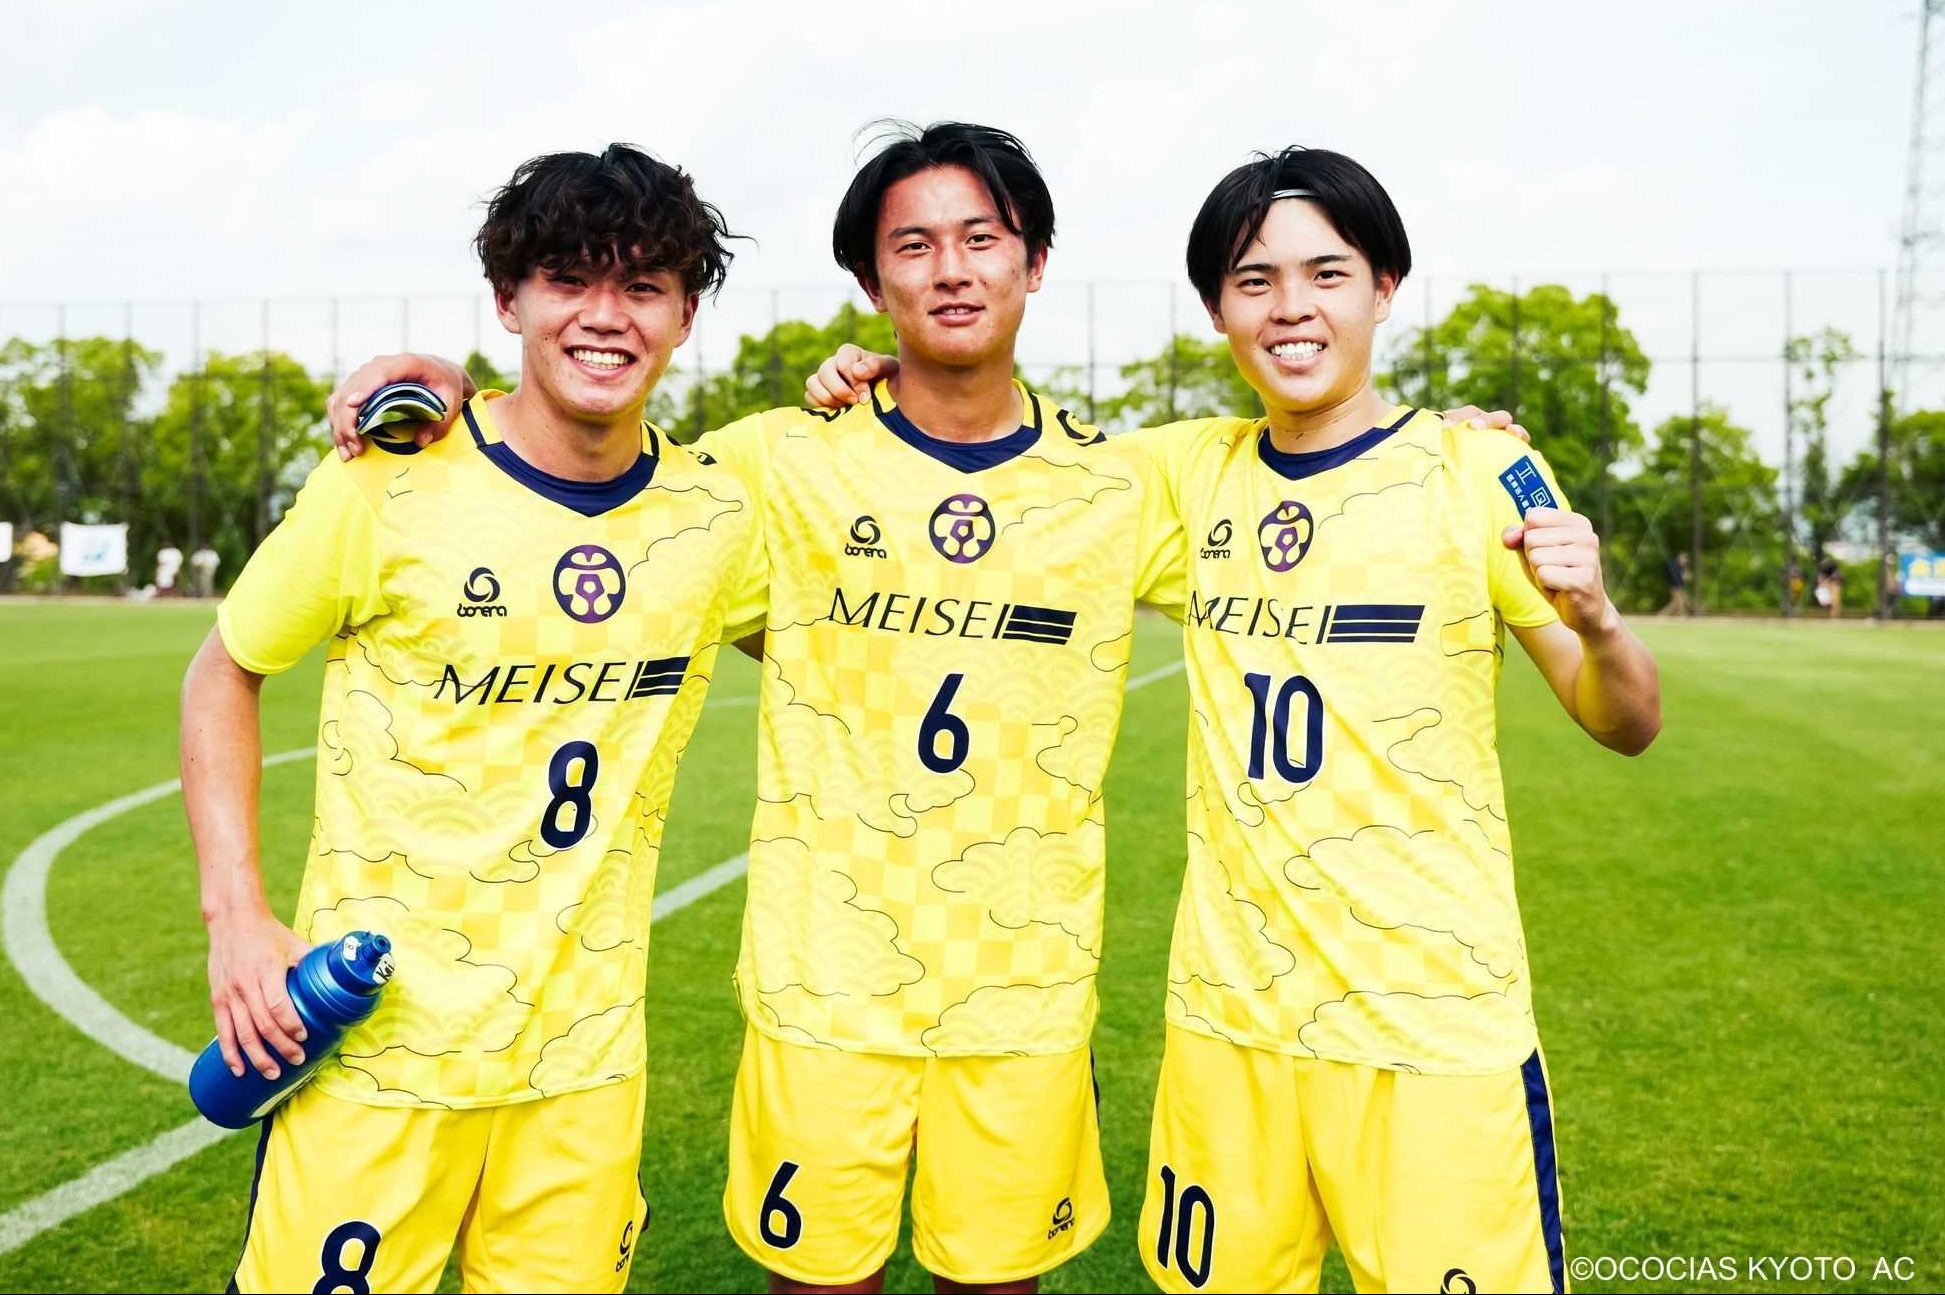 後編】スポーツを通じて、地域・日本・世界を豊かに 笑顔咲き誇る 